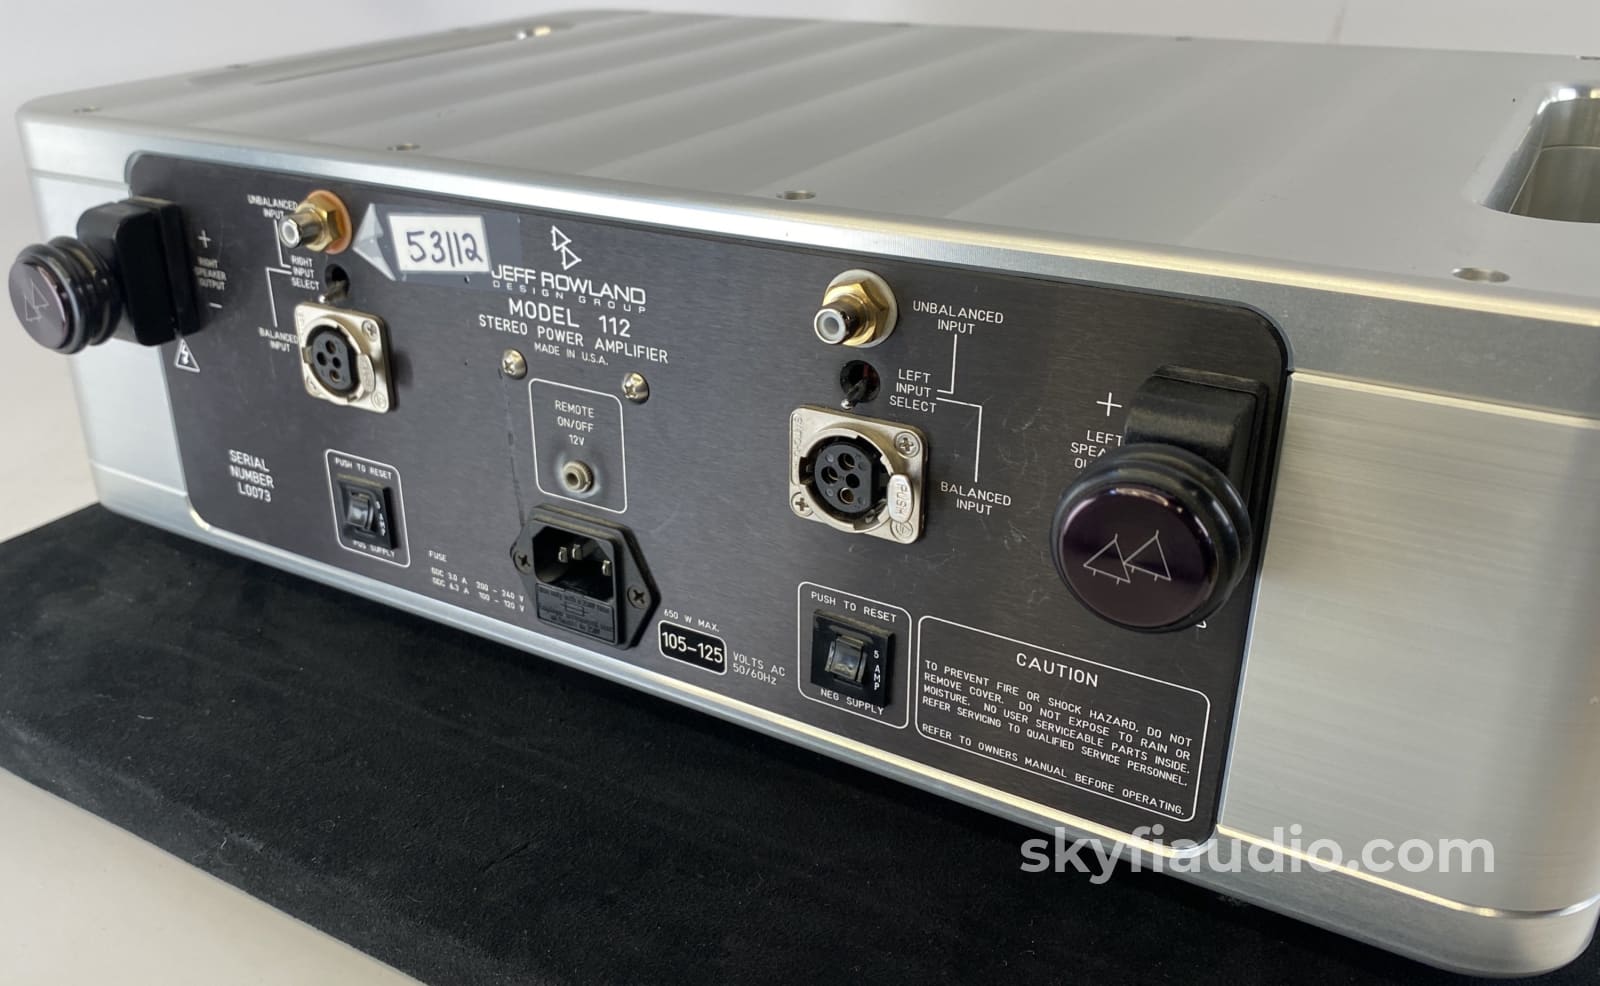 Jeff Rowland Model 112 Stereo Power Amplifier